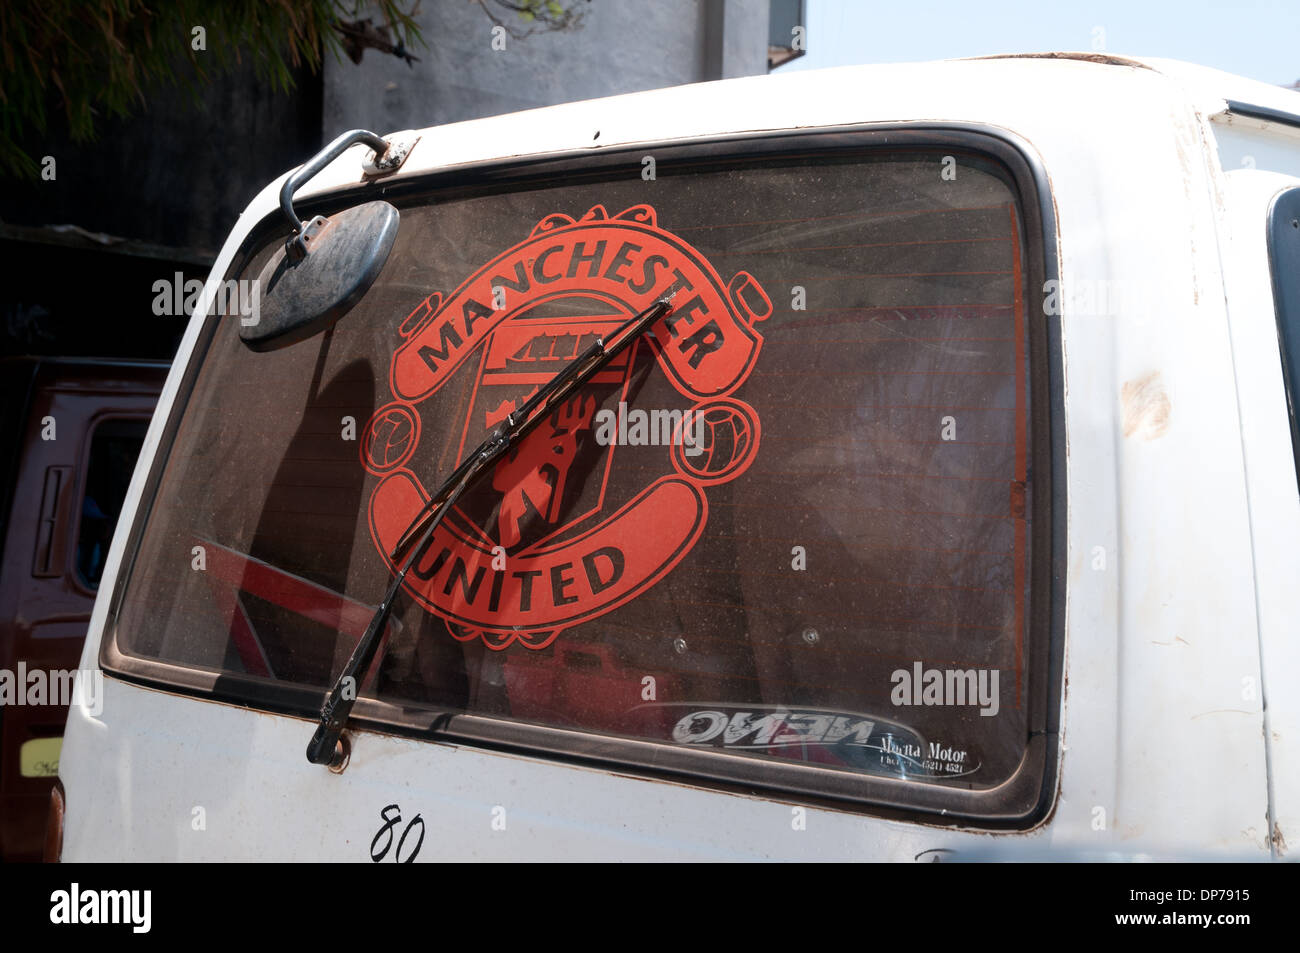 Logo pour Manchester United en vitre arrière de Matatu ou minibus à Nairobi Kenya Afrique Banque D'Images